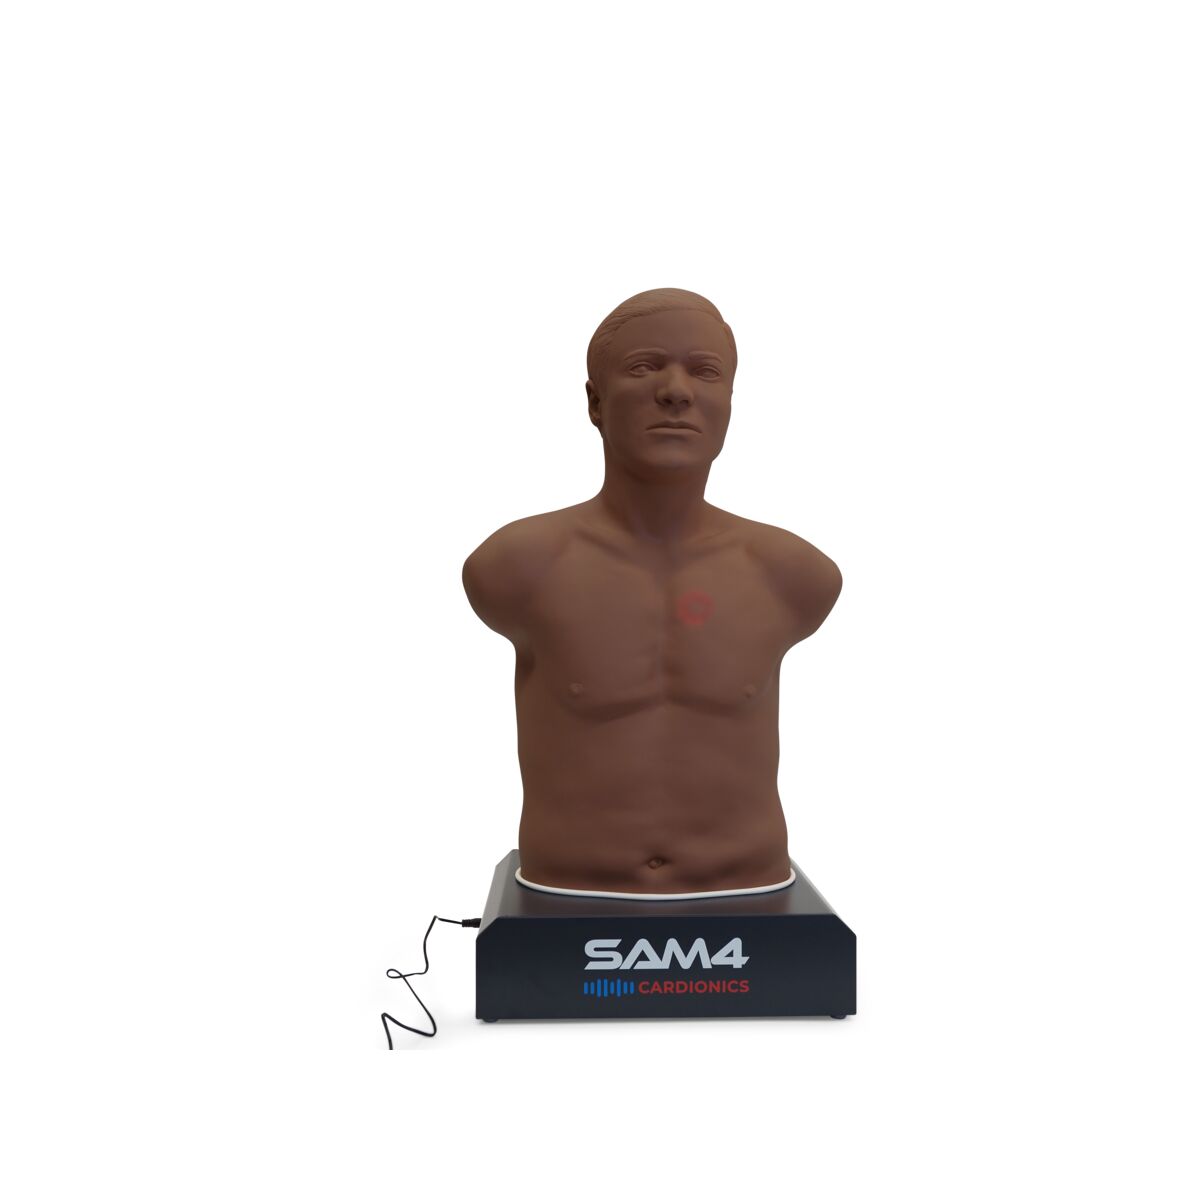 Product in SAM4 Dark Skin